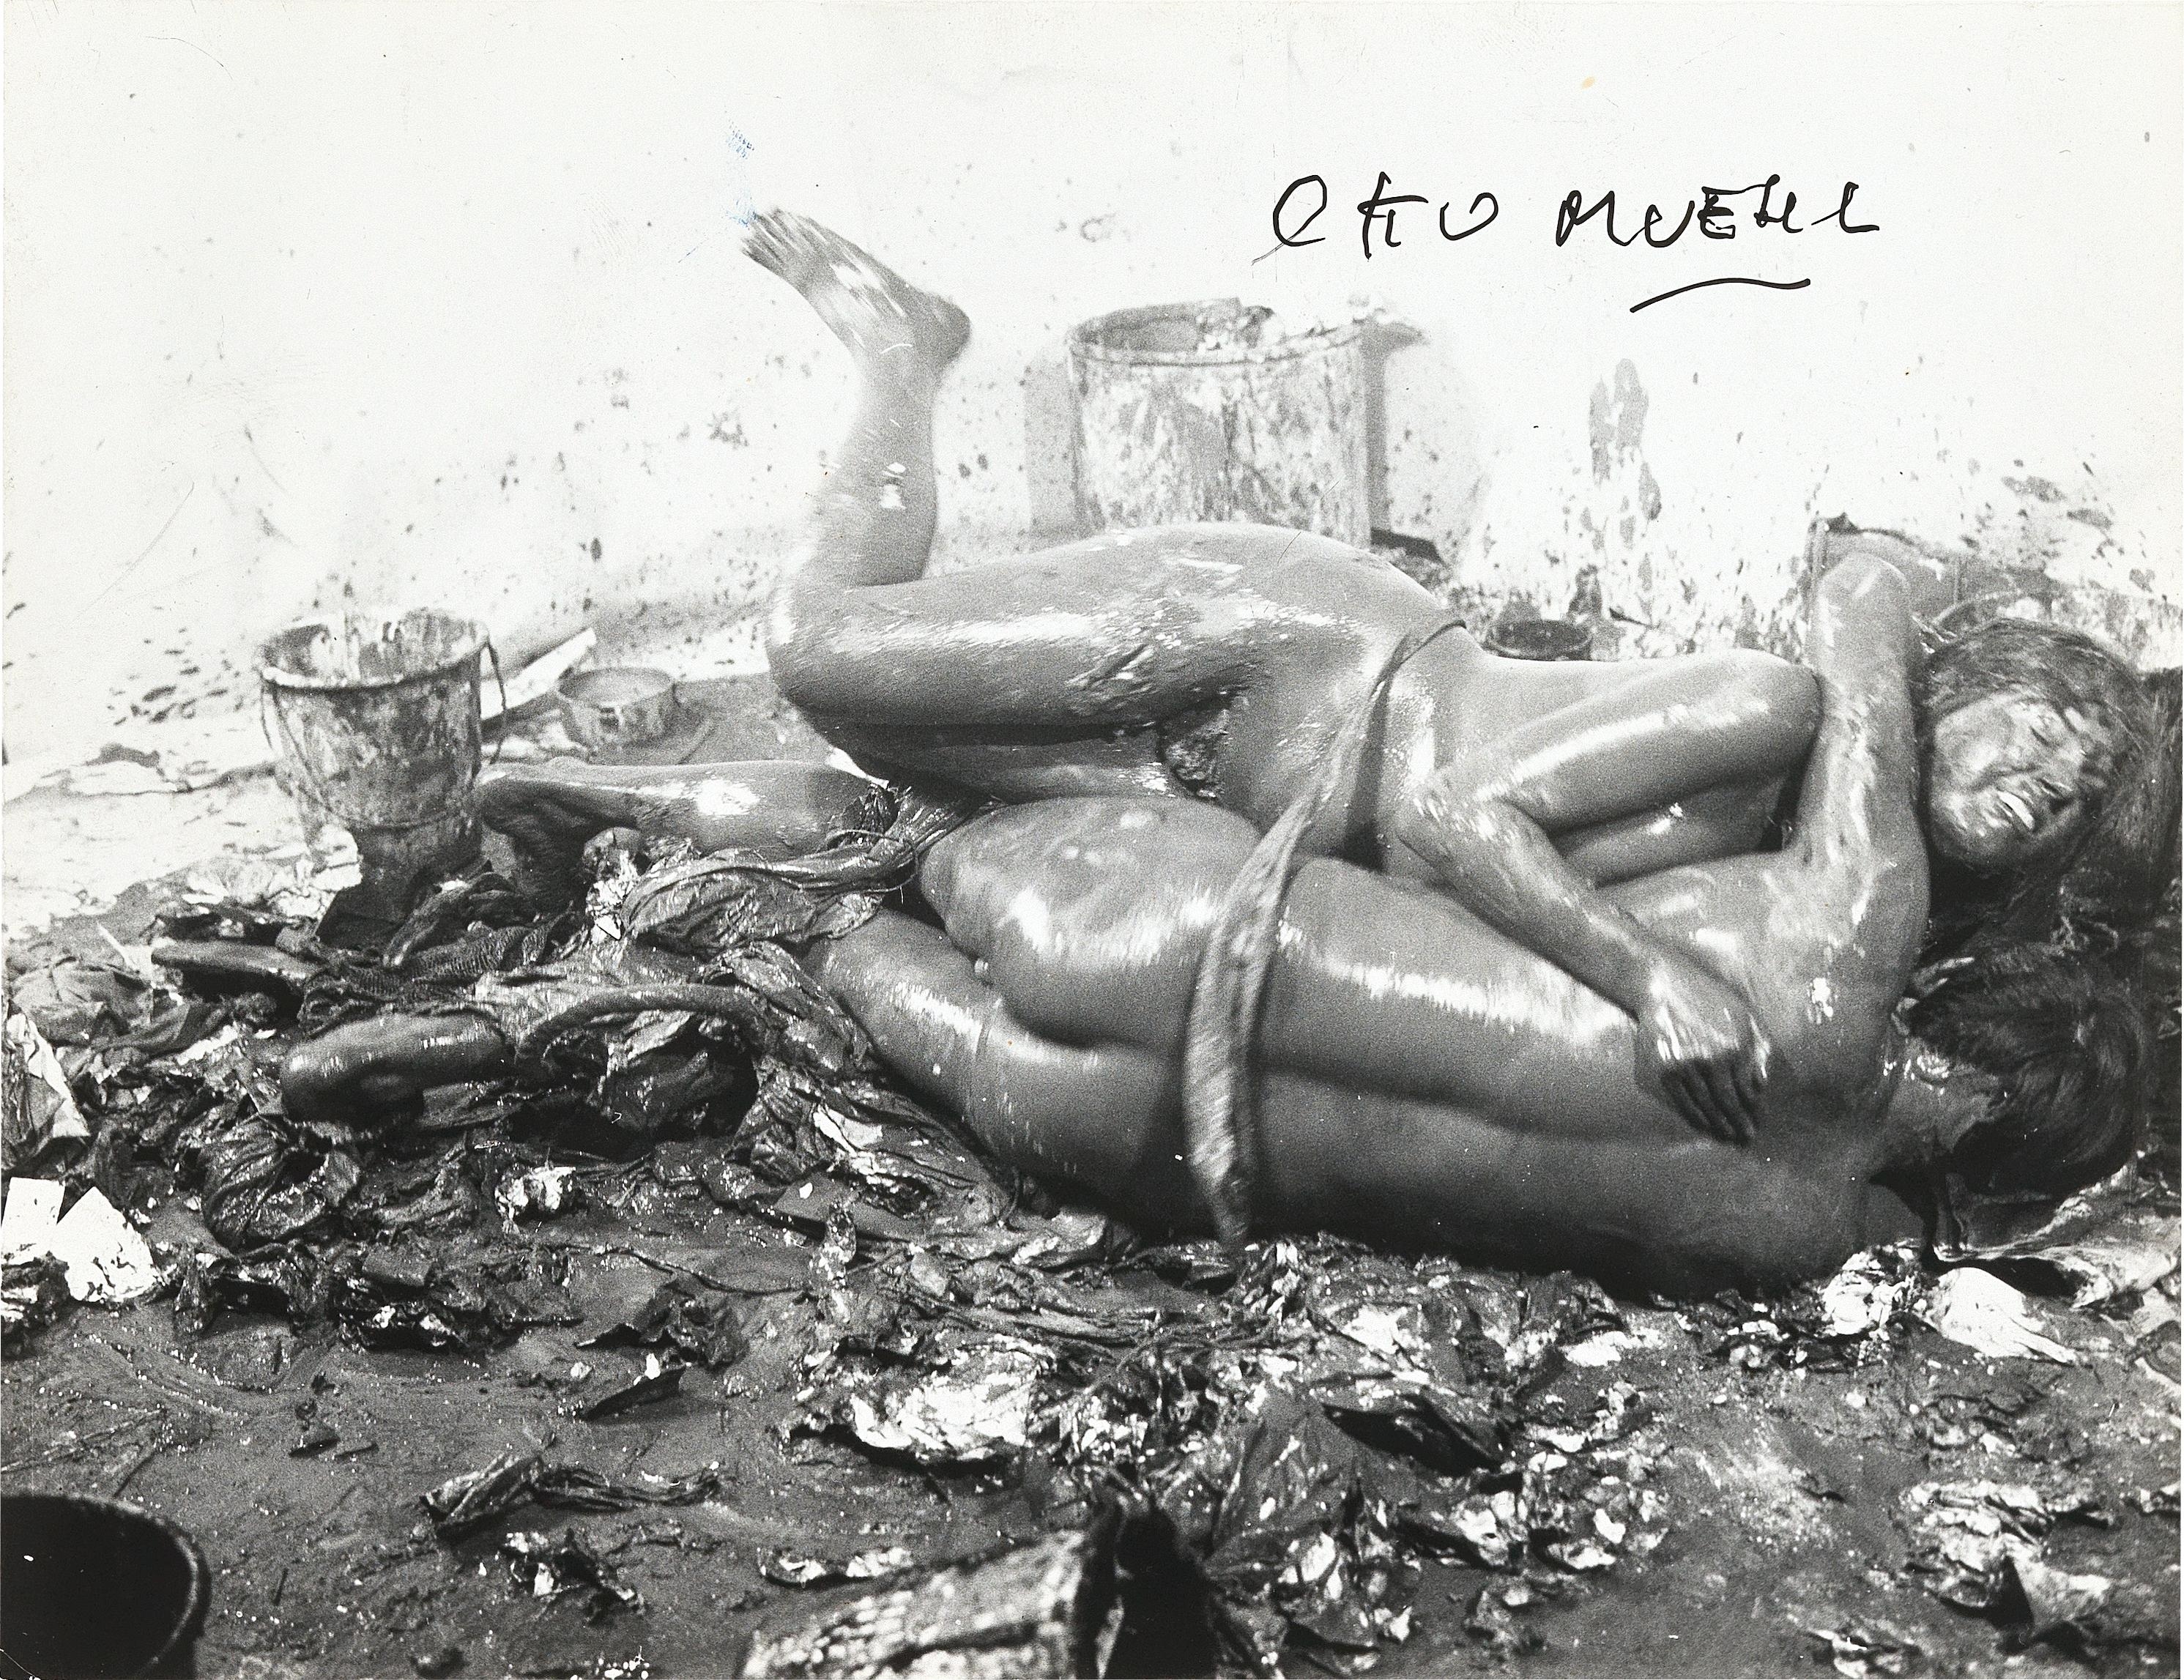 Material Action No. 3: ‘Klarsichtpackung-Versumpfung in einer Truhe-Panierung eines weiblichen Gesäßes-Wälzen im Schlamm’ by Otto Muehl, 1964